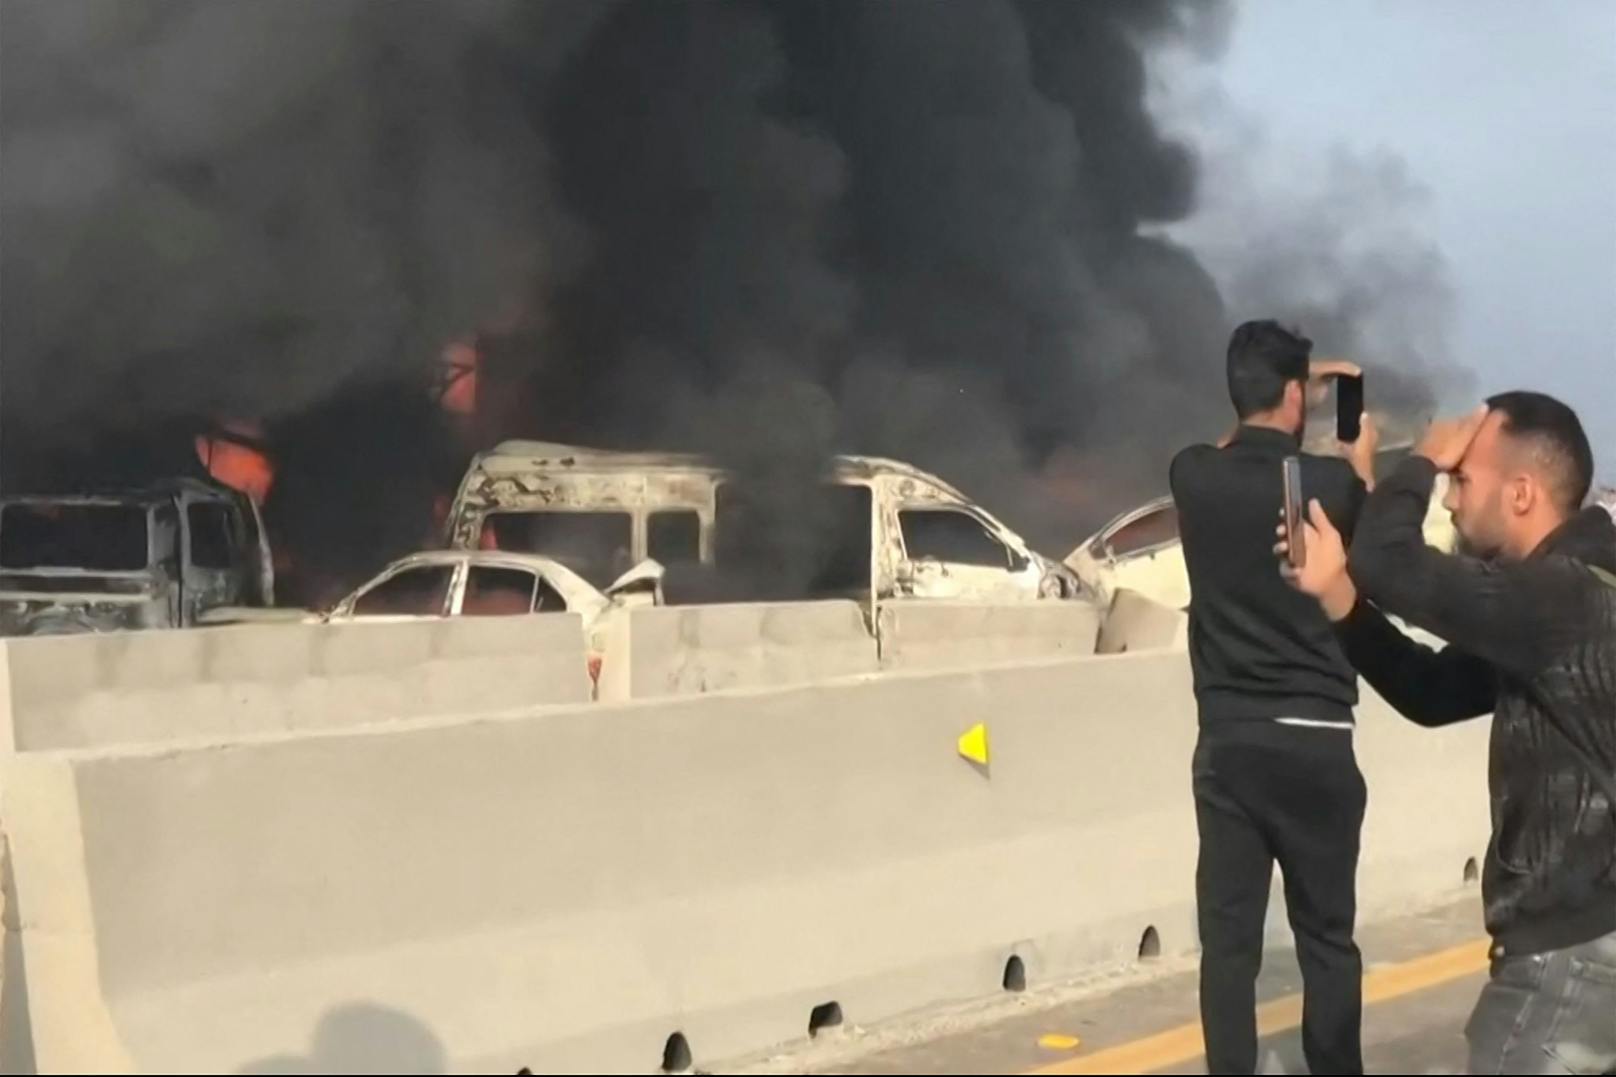 Auf Aufnahmen vom Unfallort im Internet waren verbrannte Fahrzeuge am Straßenrand zu sehen.